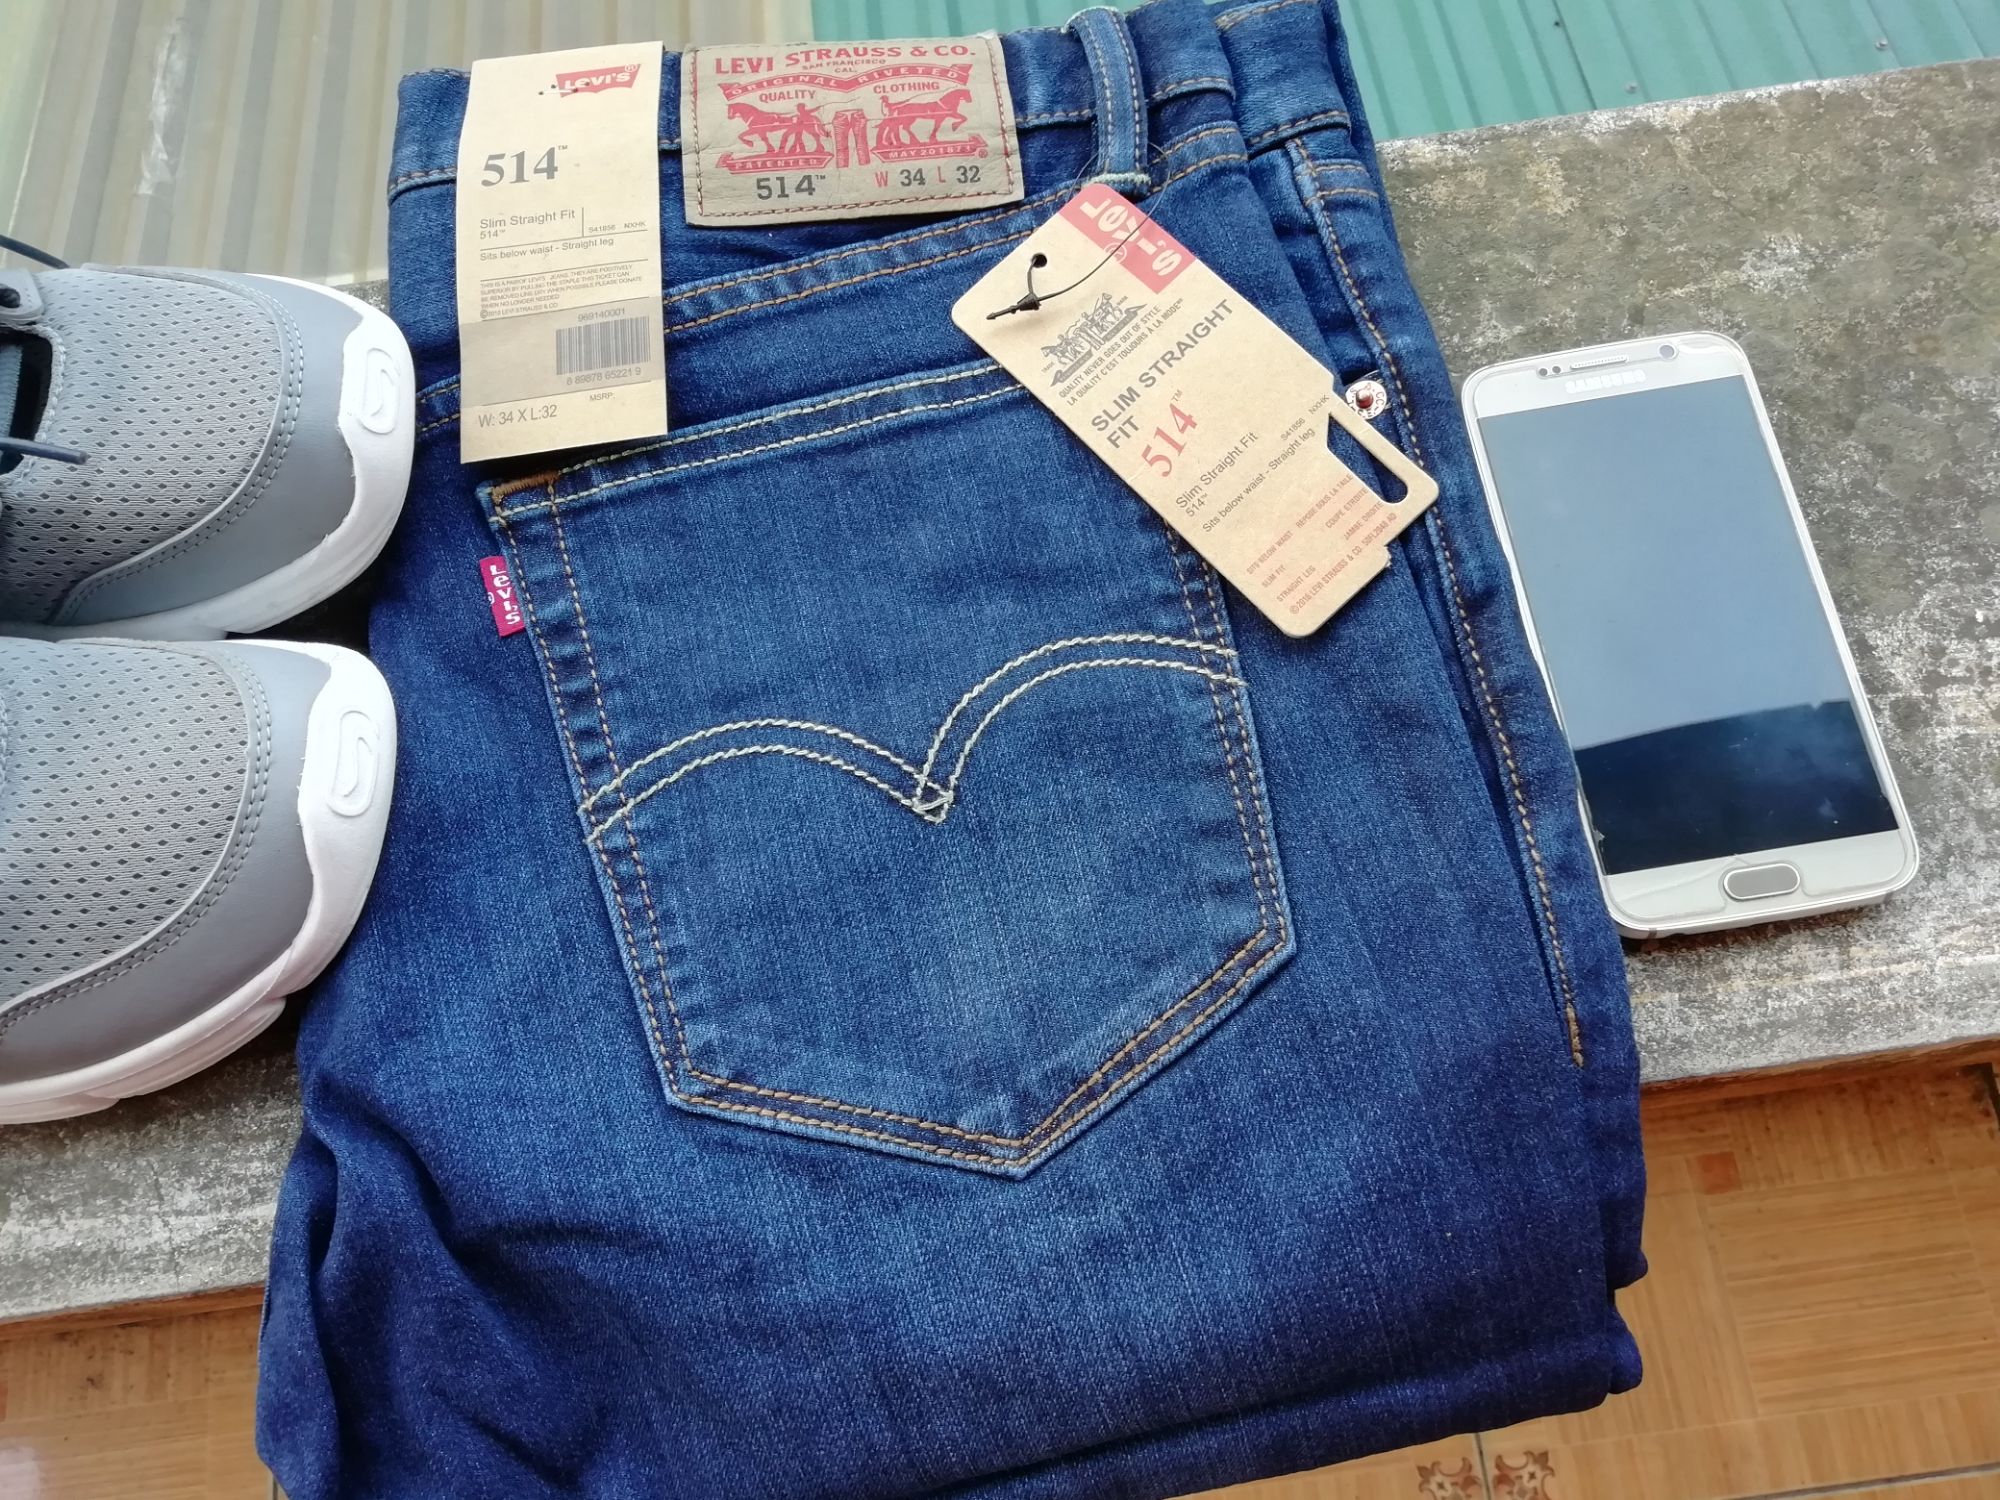 Levi's 511 : Mua bán trực tuyến Quần jeans với giá rẻ 